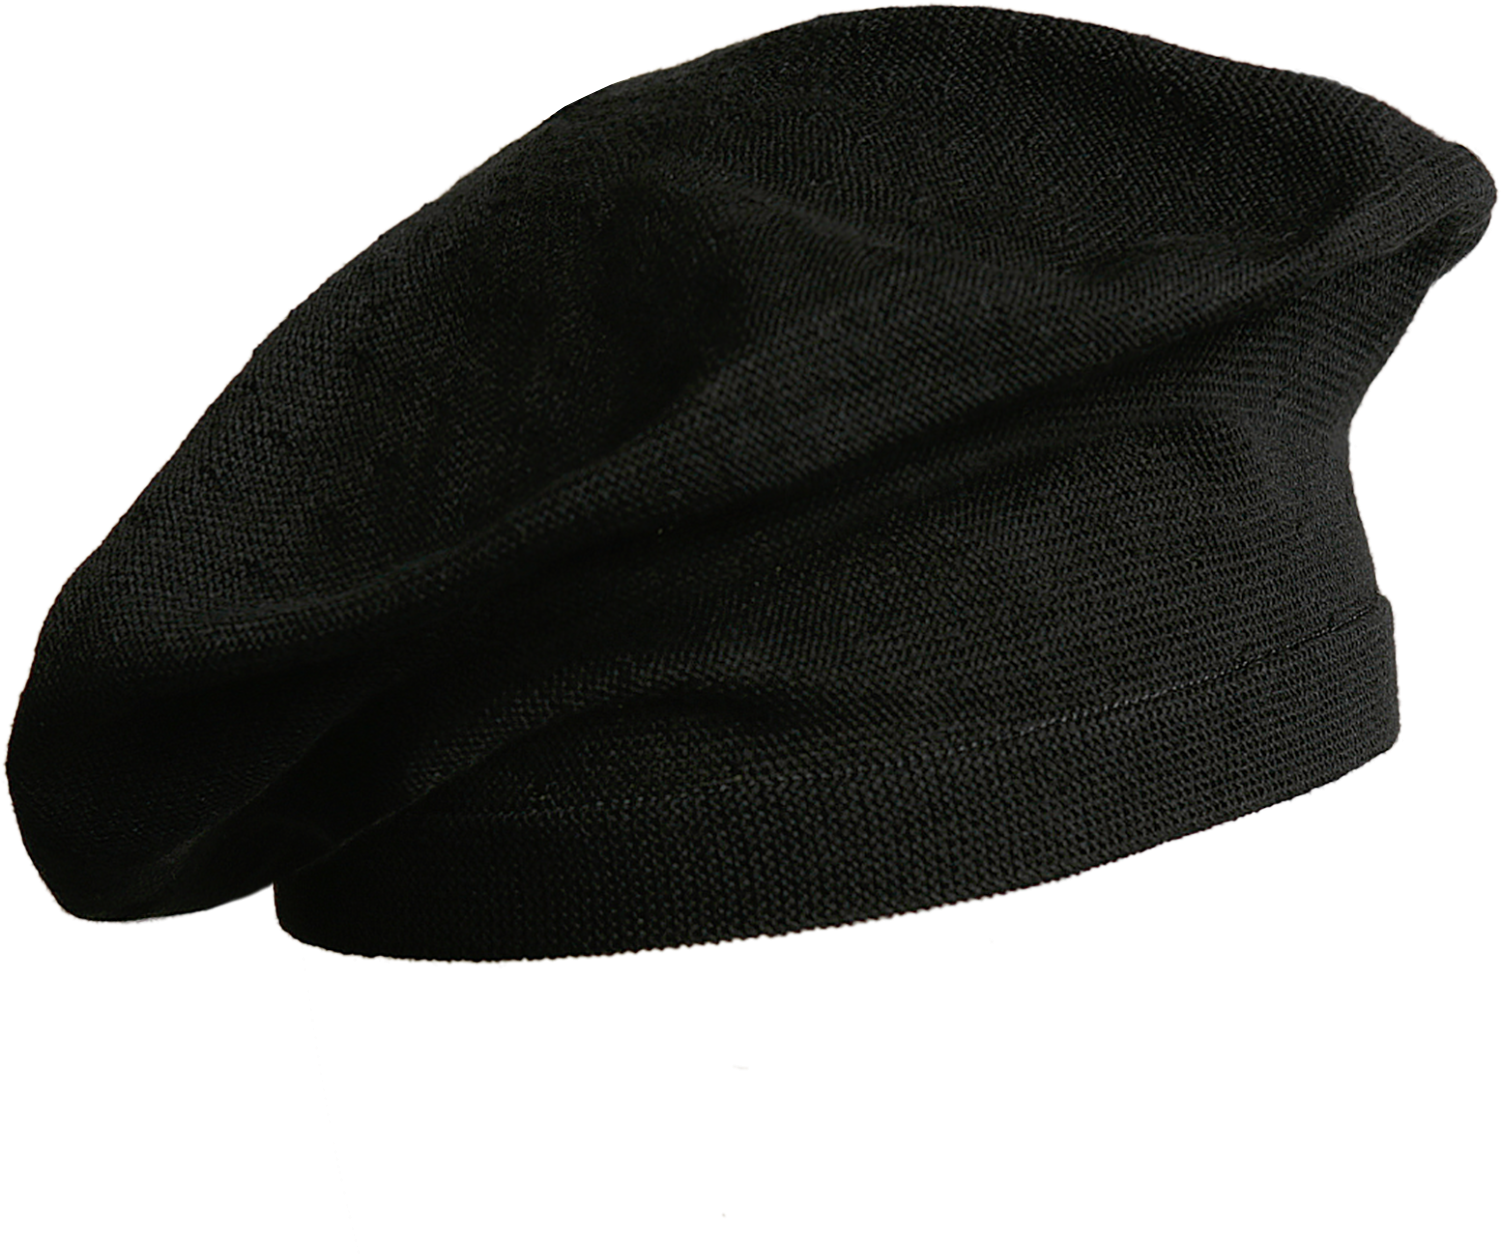 Hat Black Download HQ PNG Image